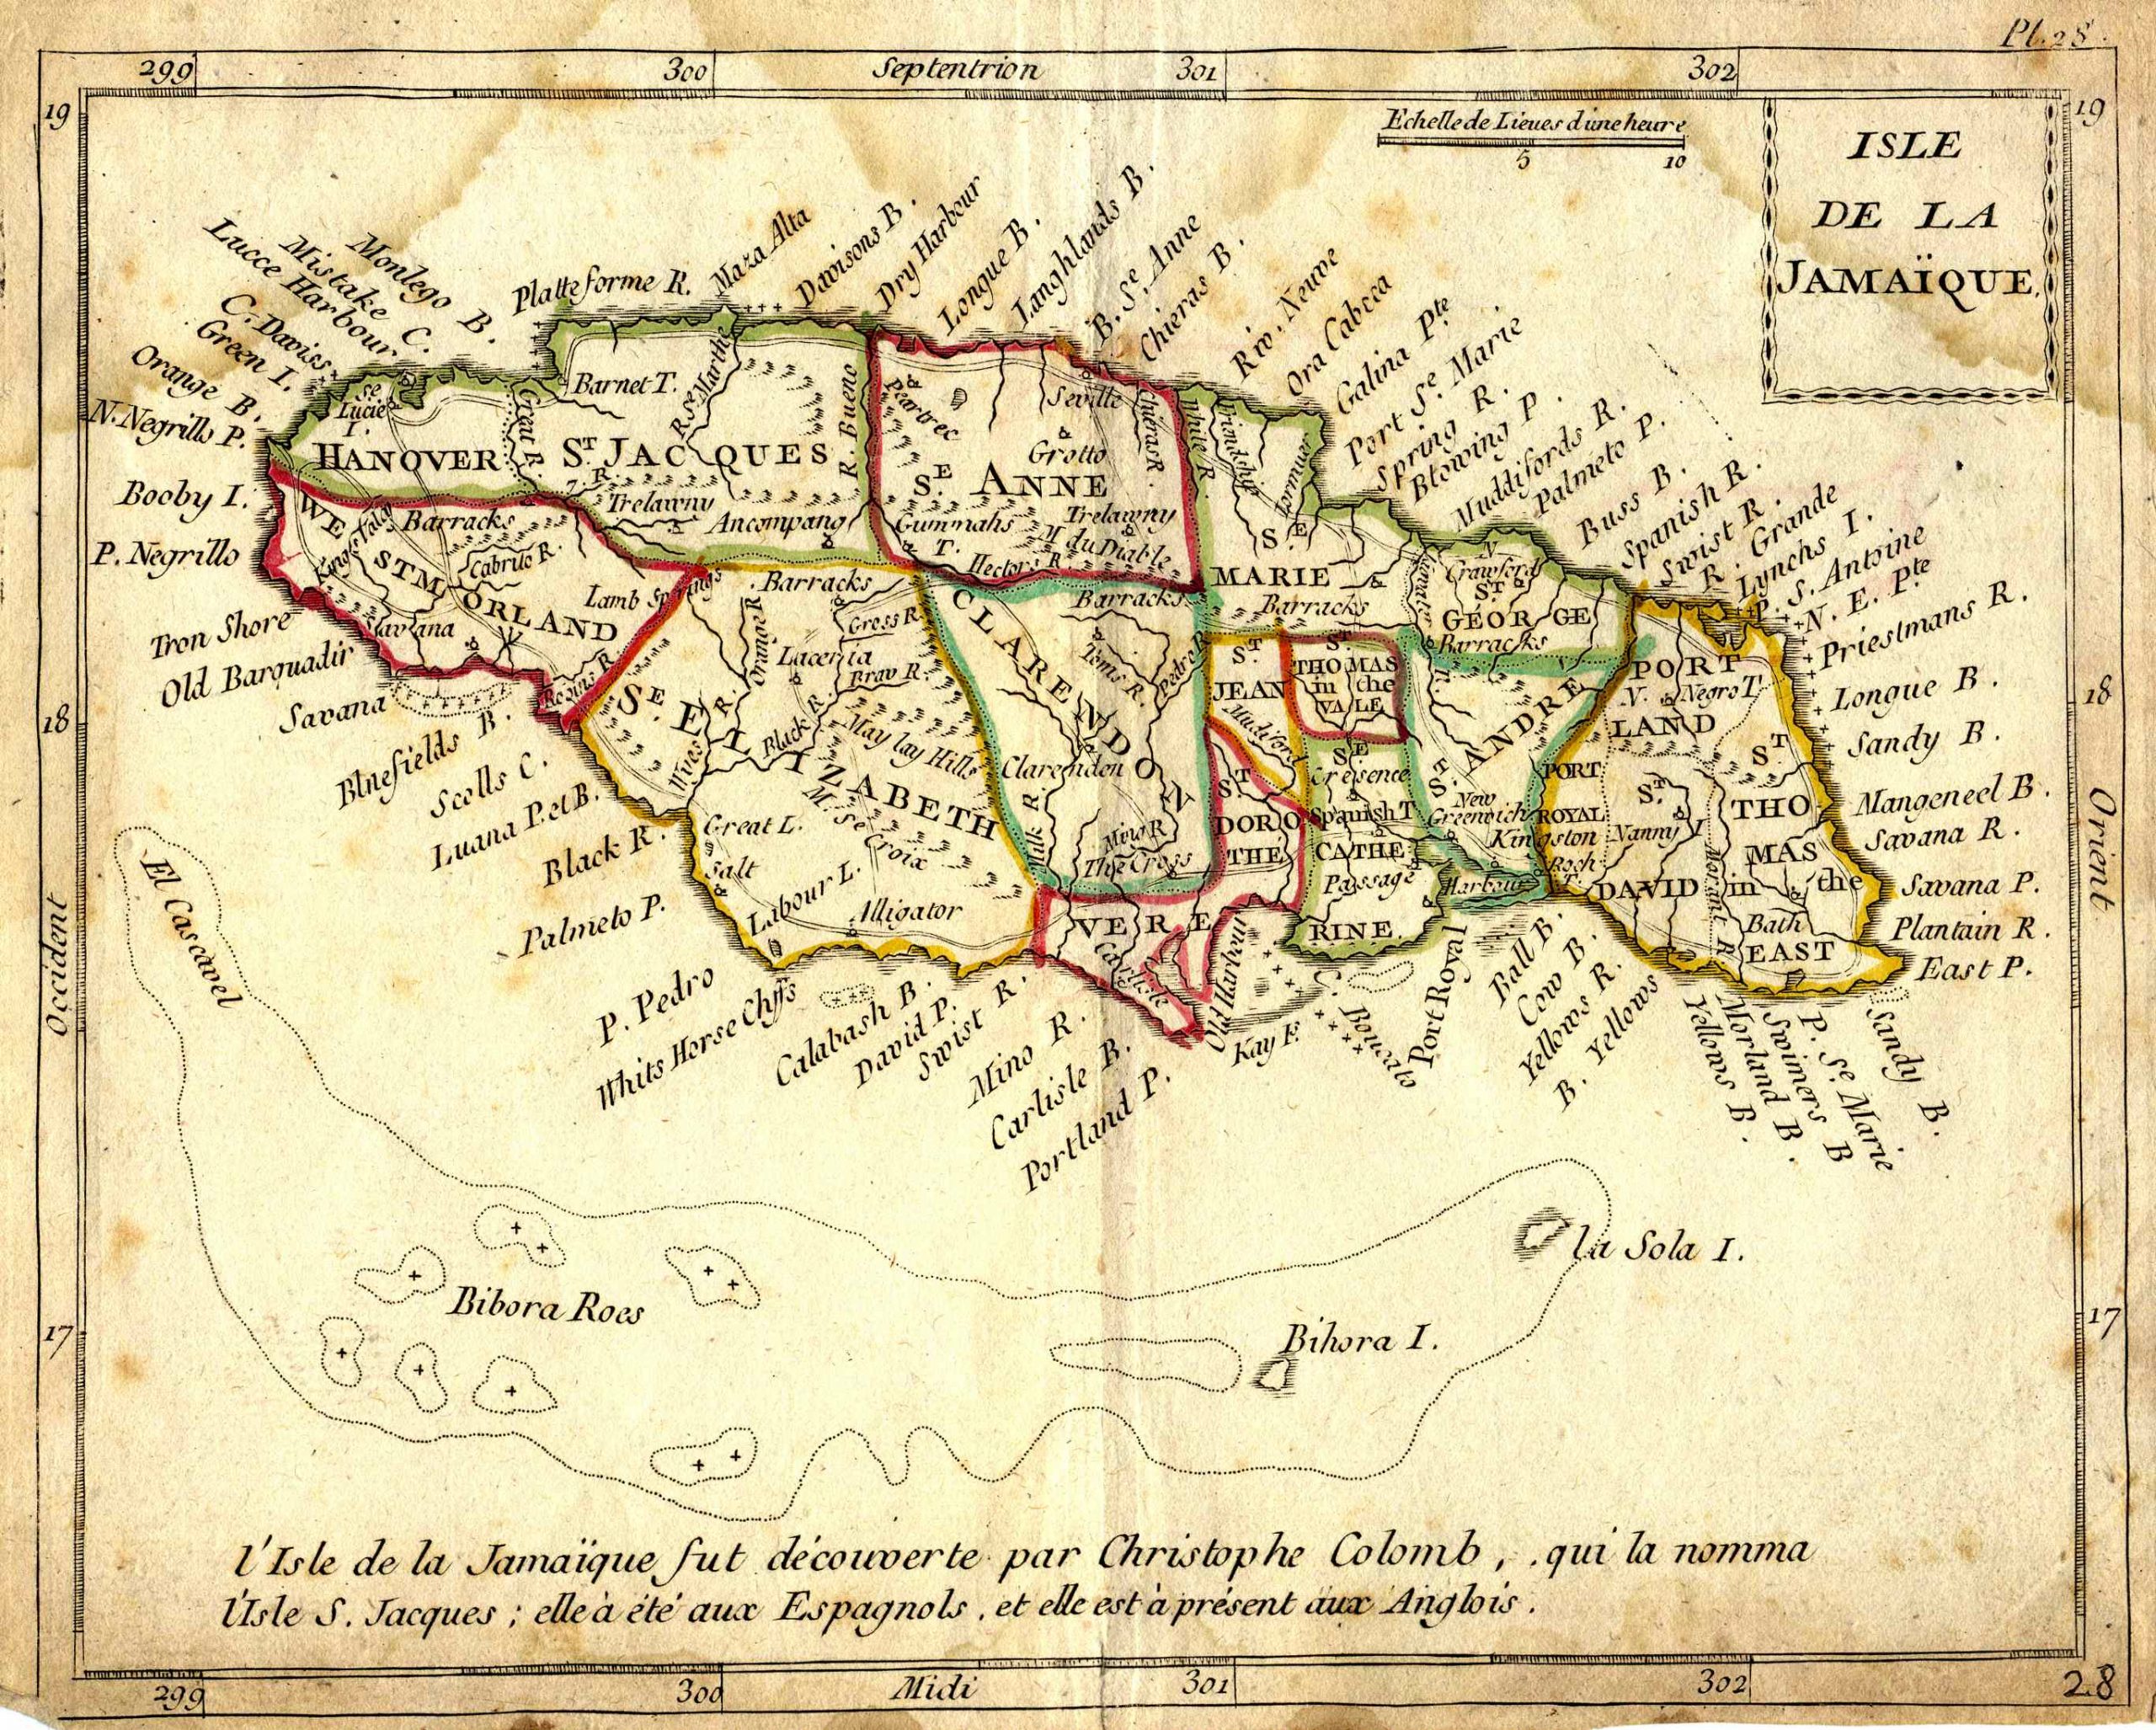 Arrowsmith's Isle de la Jamaique - 1812